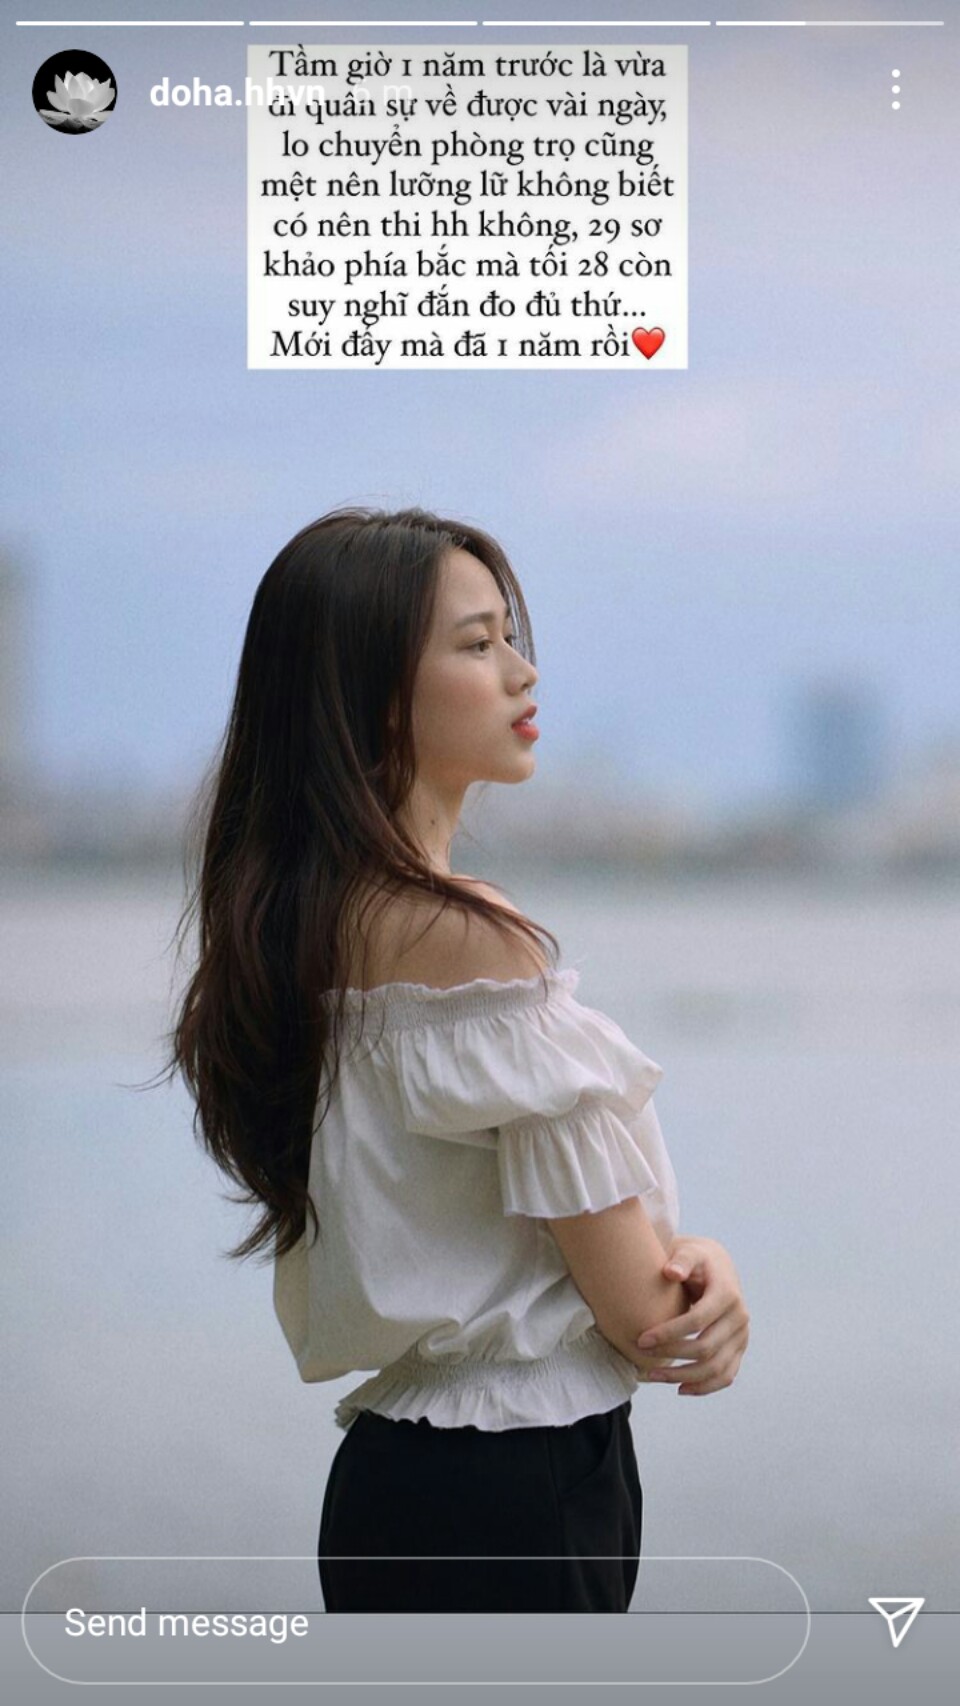 Trước ngày đi thi Hoa hậu Việt Nam, Đỗ Thị Hà còn loay hoay chuyển nhà trọ - Ảnh 1